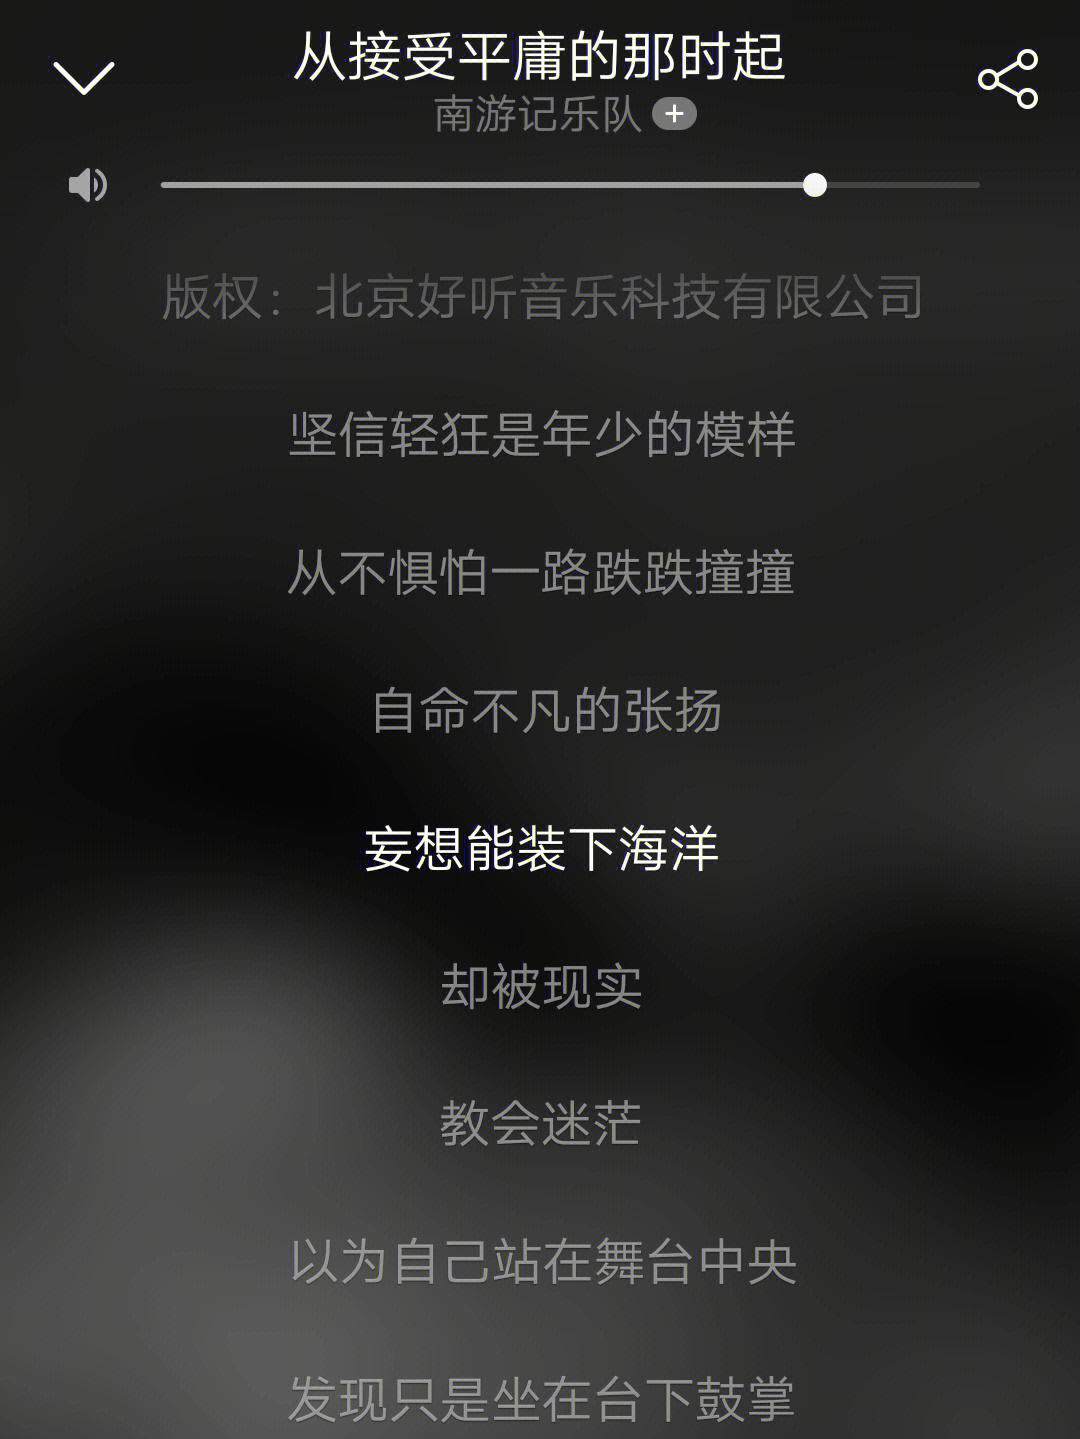 好的歌词真的会提升歌曲的故事感,想求一些歌词写的好的华语歌曲